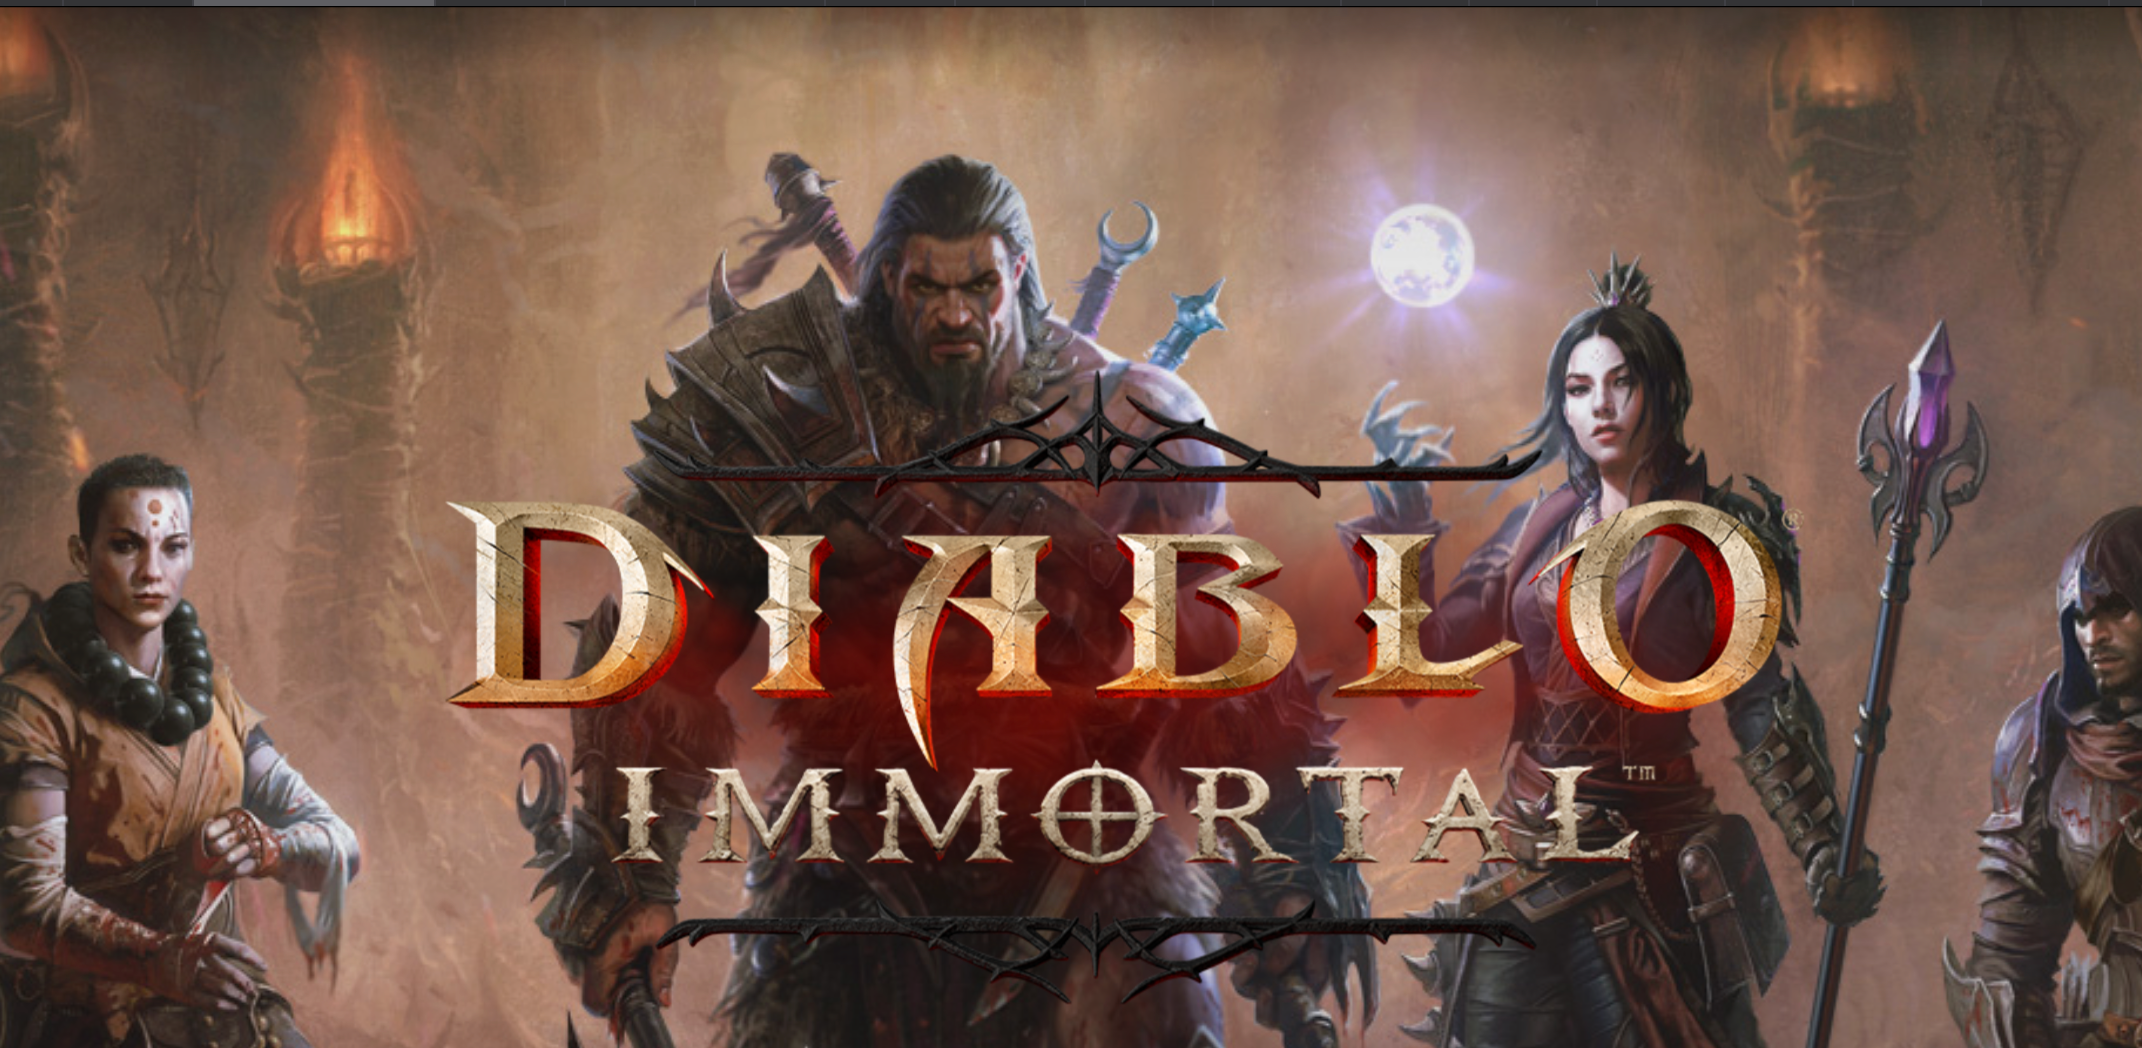 Håver inn penger på «gratis» Diablo Immortal